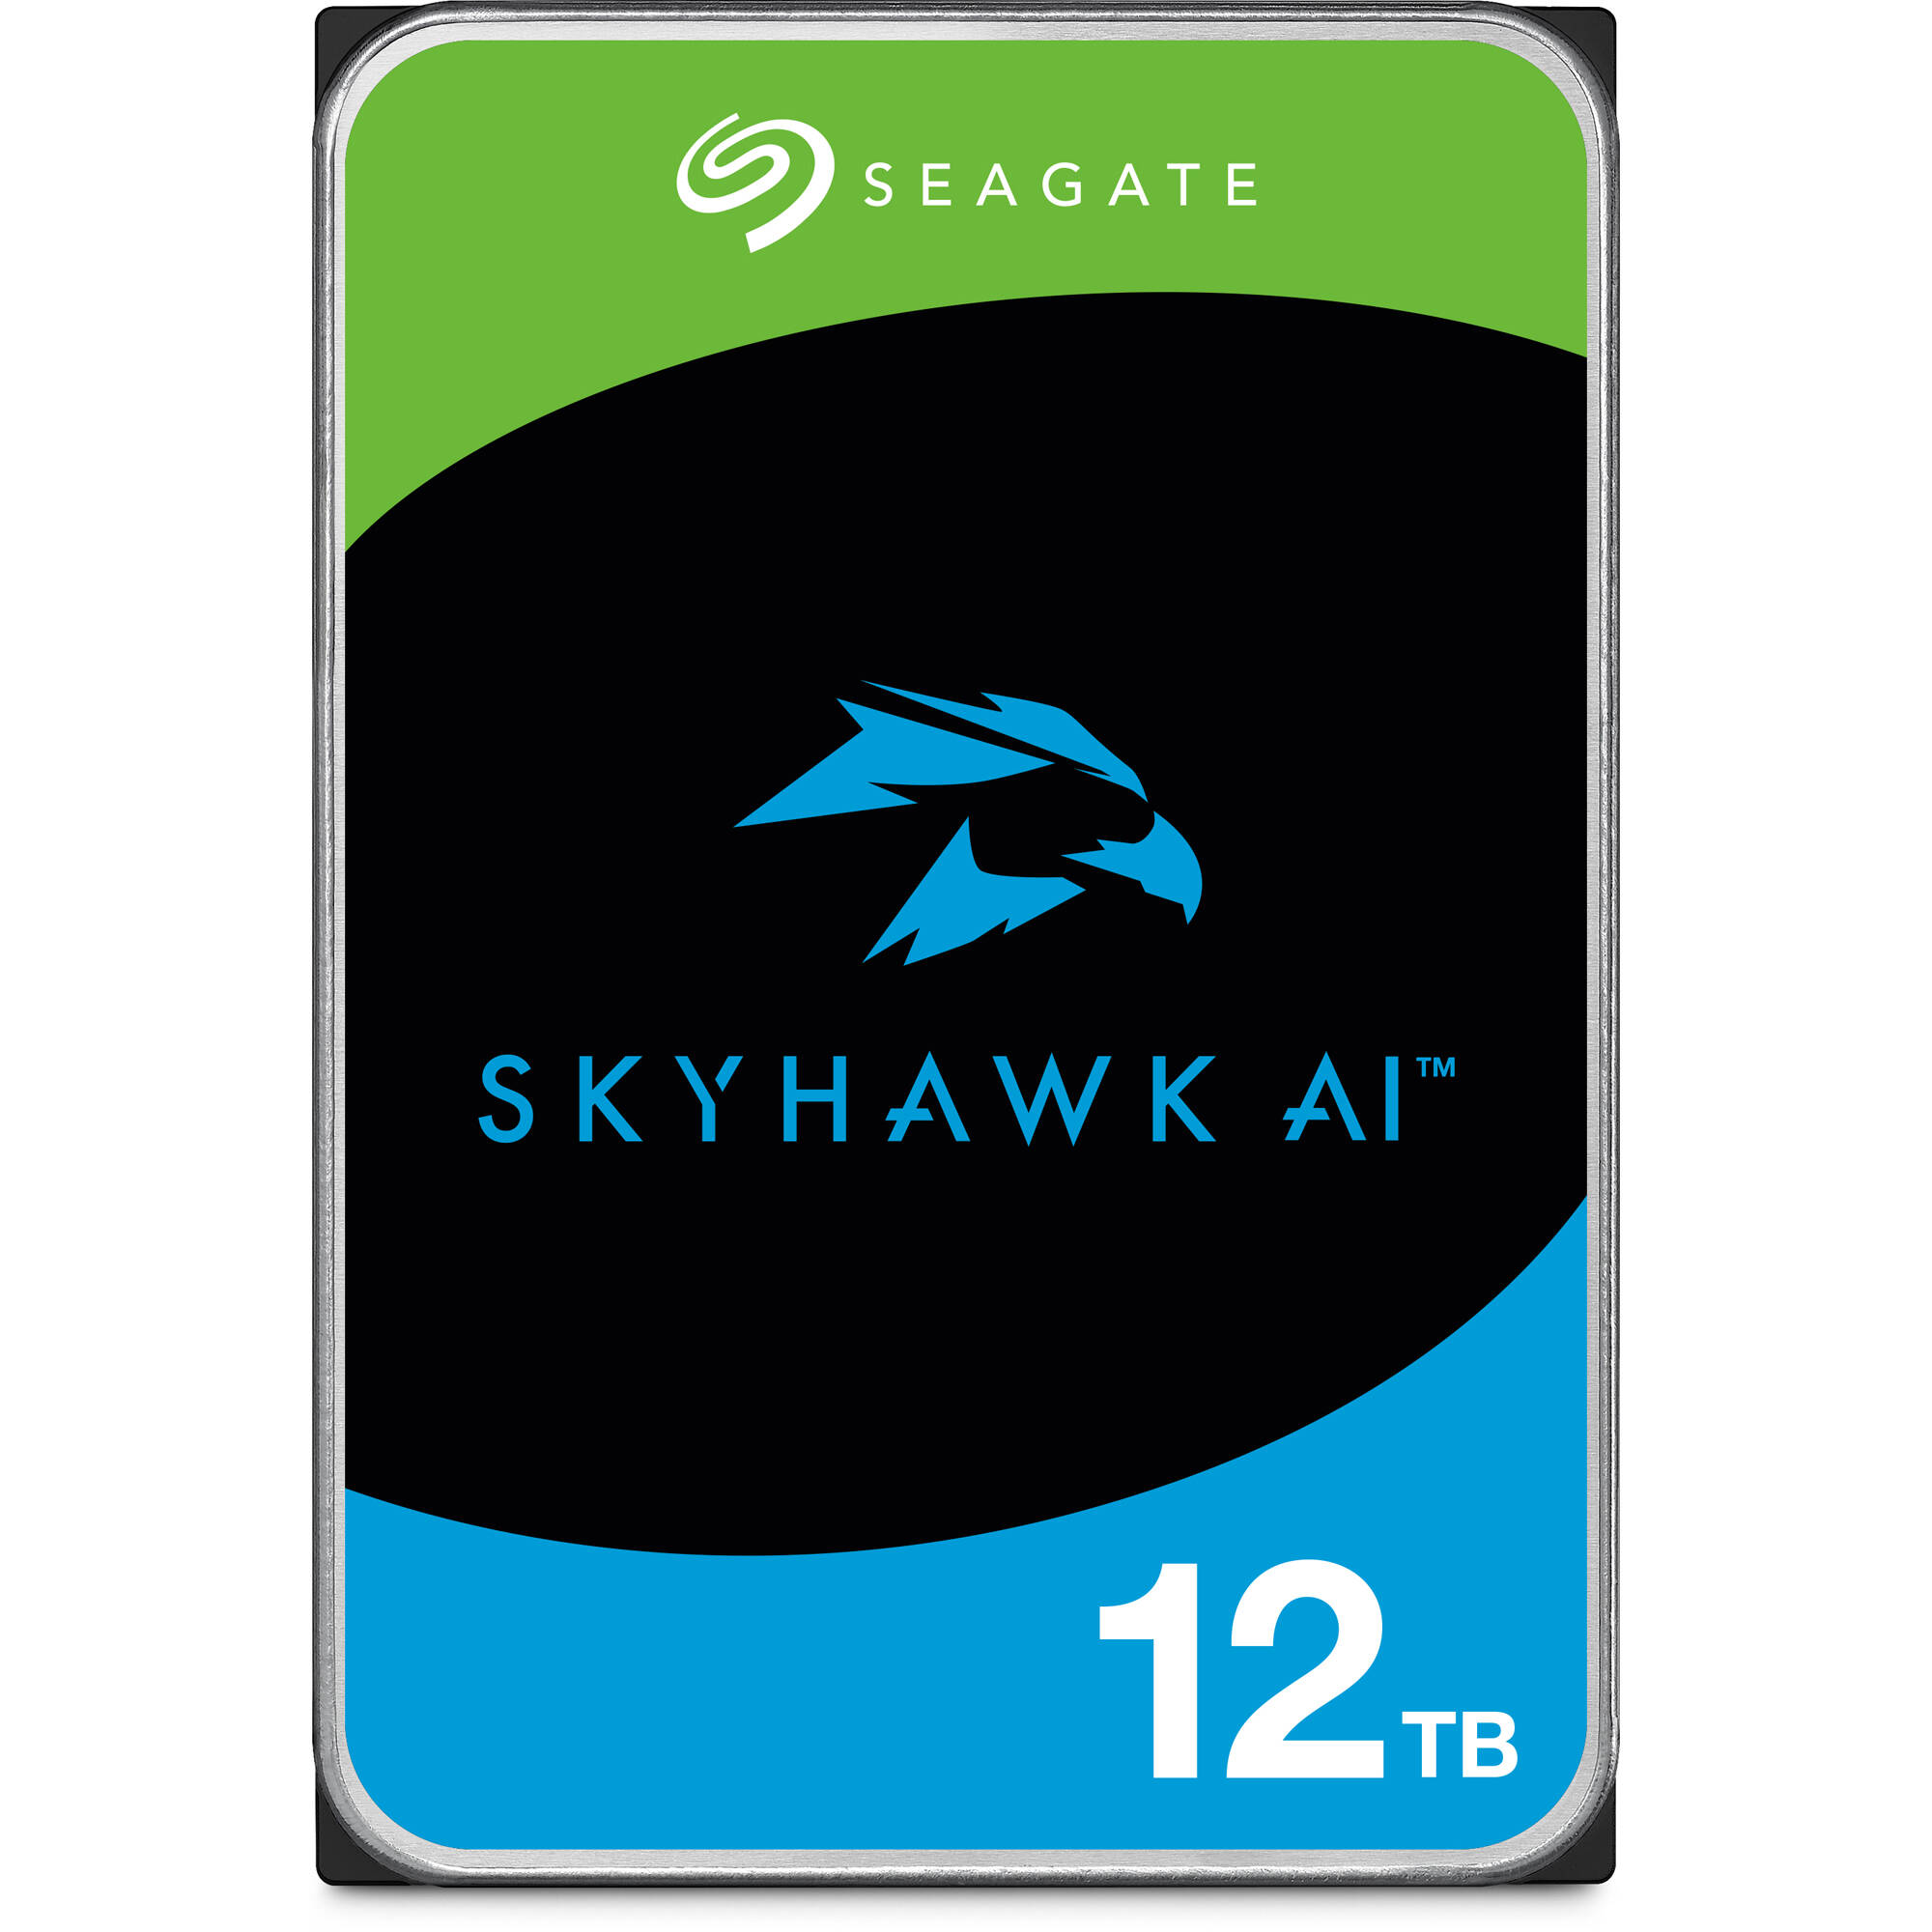 Seagate%20Skyhawk%20ST12000VE001%2012tb%207200rpm%20256mb%20sata3%206Gbit/sn%207/24%20hdd